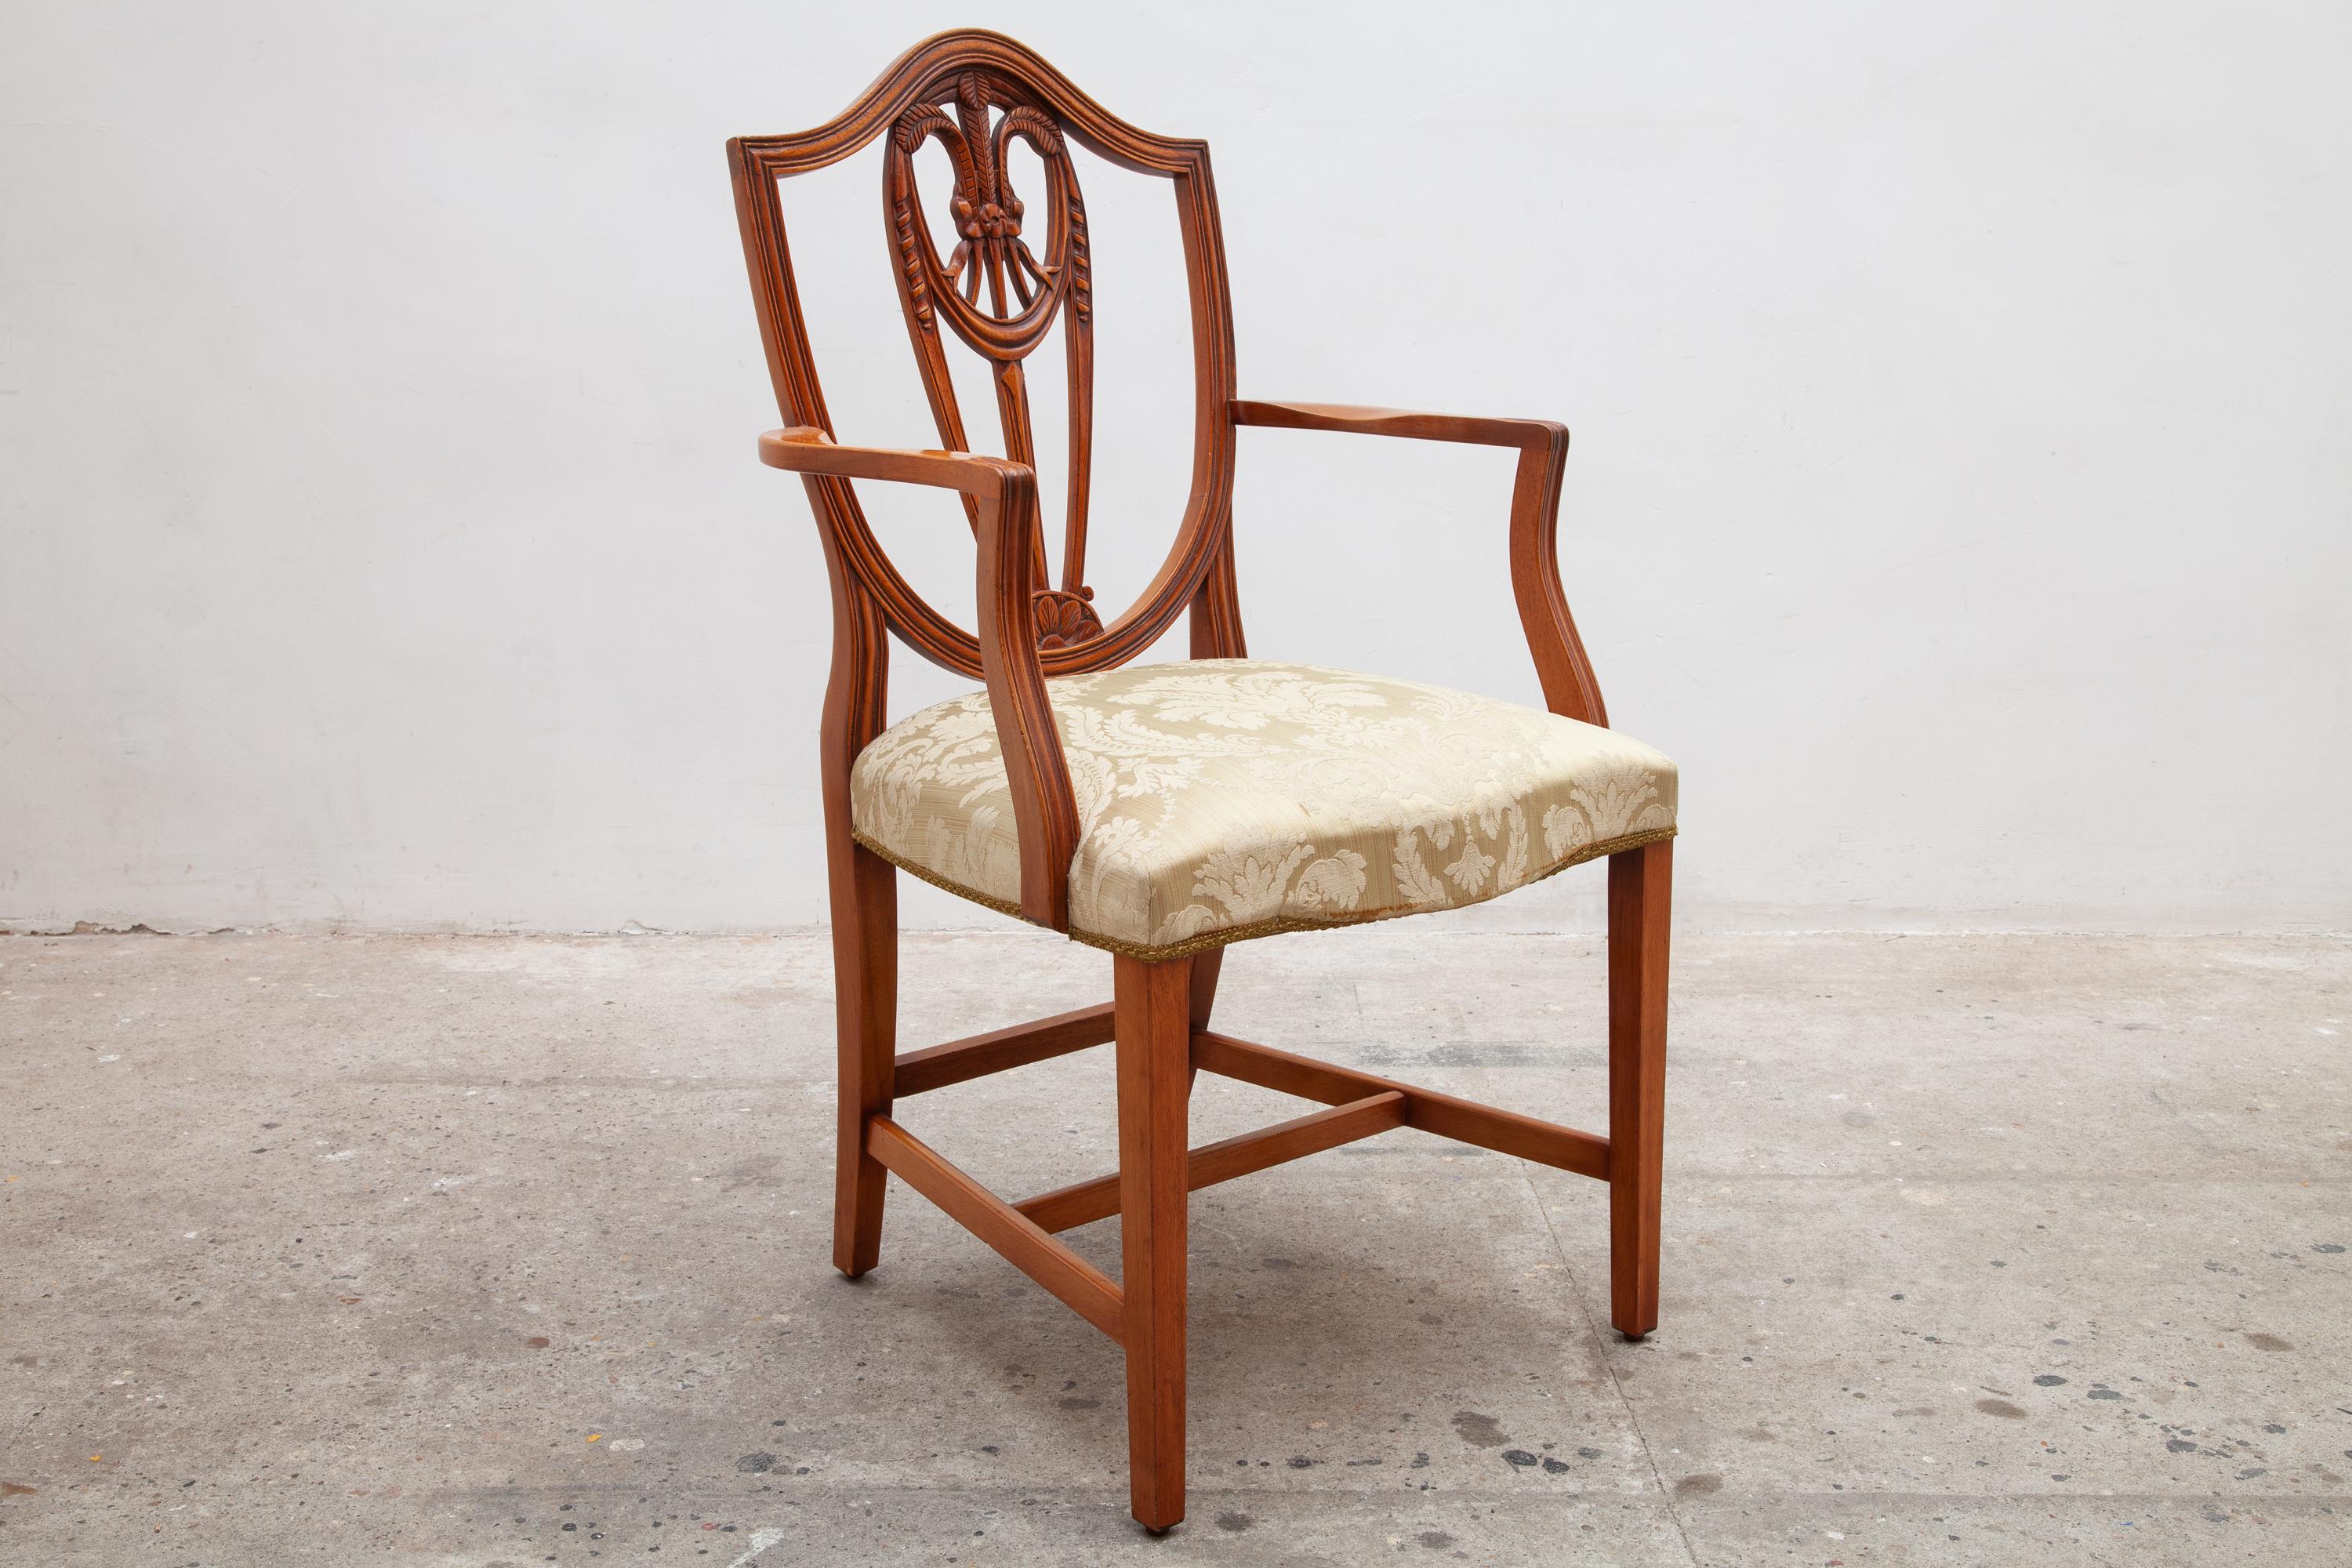 Un ensemble de deux chaises de style géorgien de haute qualité du 20e siècle. Cadre en noyer avec un arc sculpté et un motif floral au niveau du dossier, les sièges sont tapissés dans un matériau neutre de style damassé en excellent état.six chaises